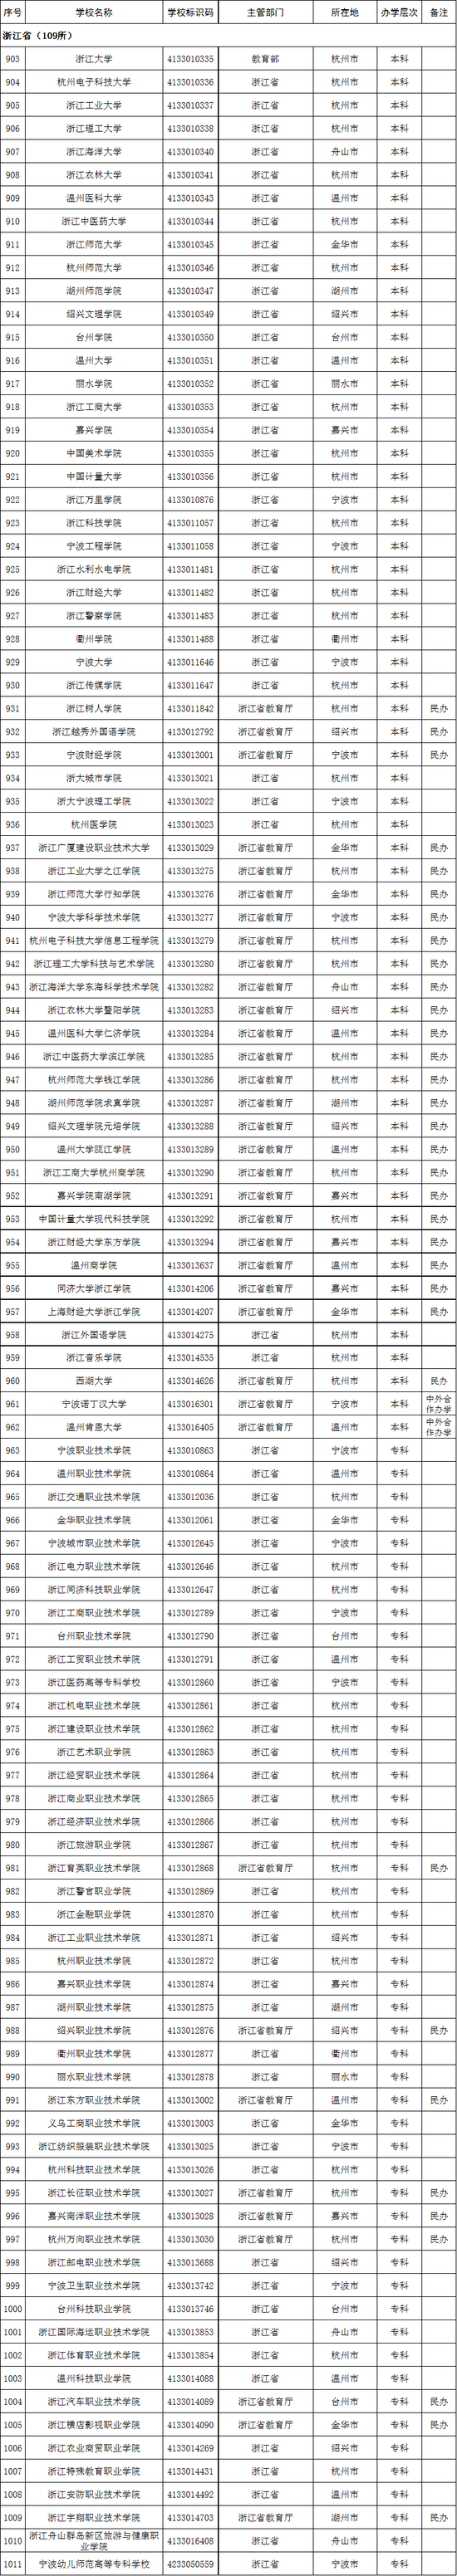 2020年浙江省高校名单(109所)